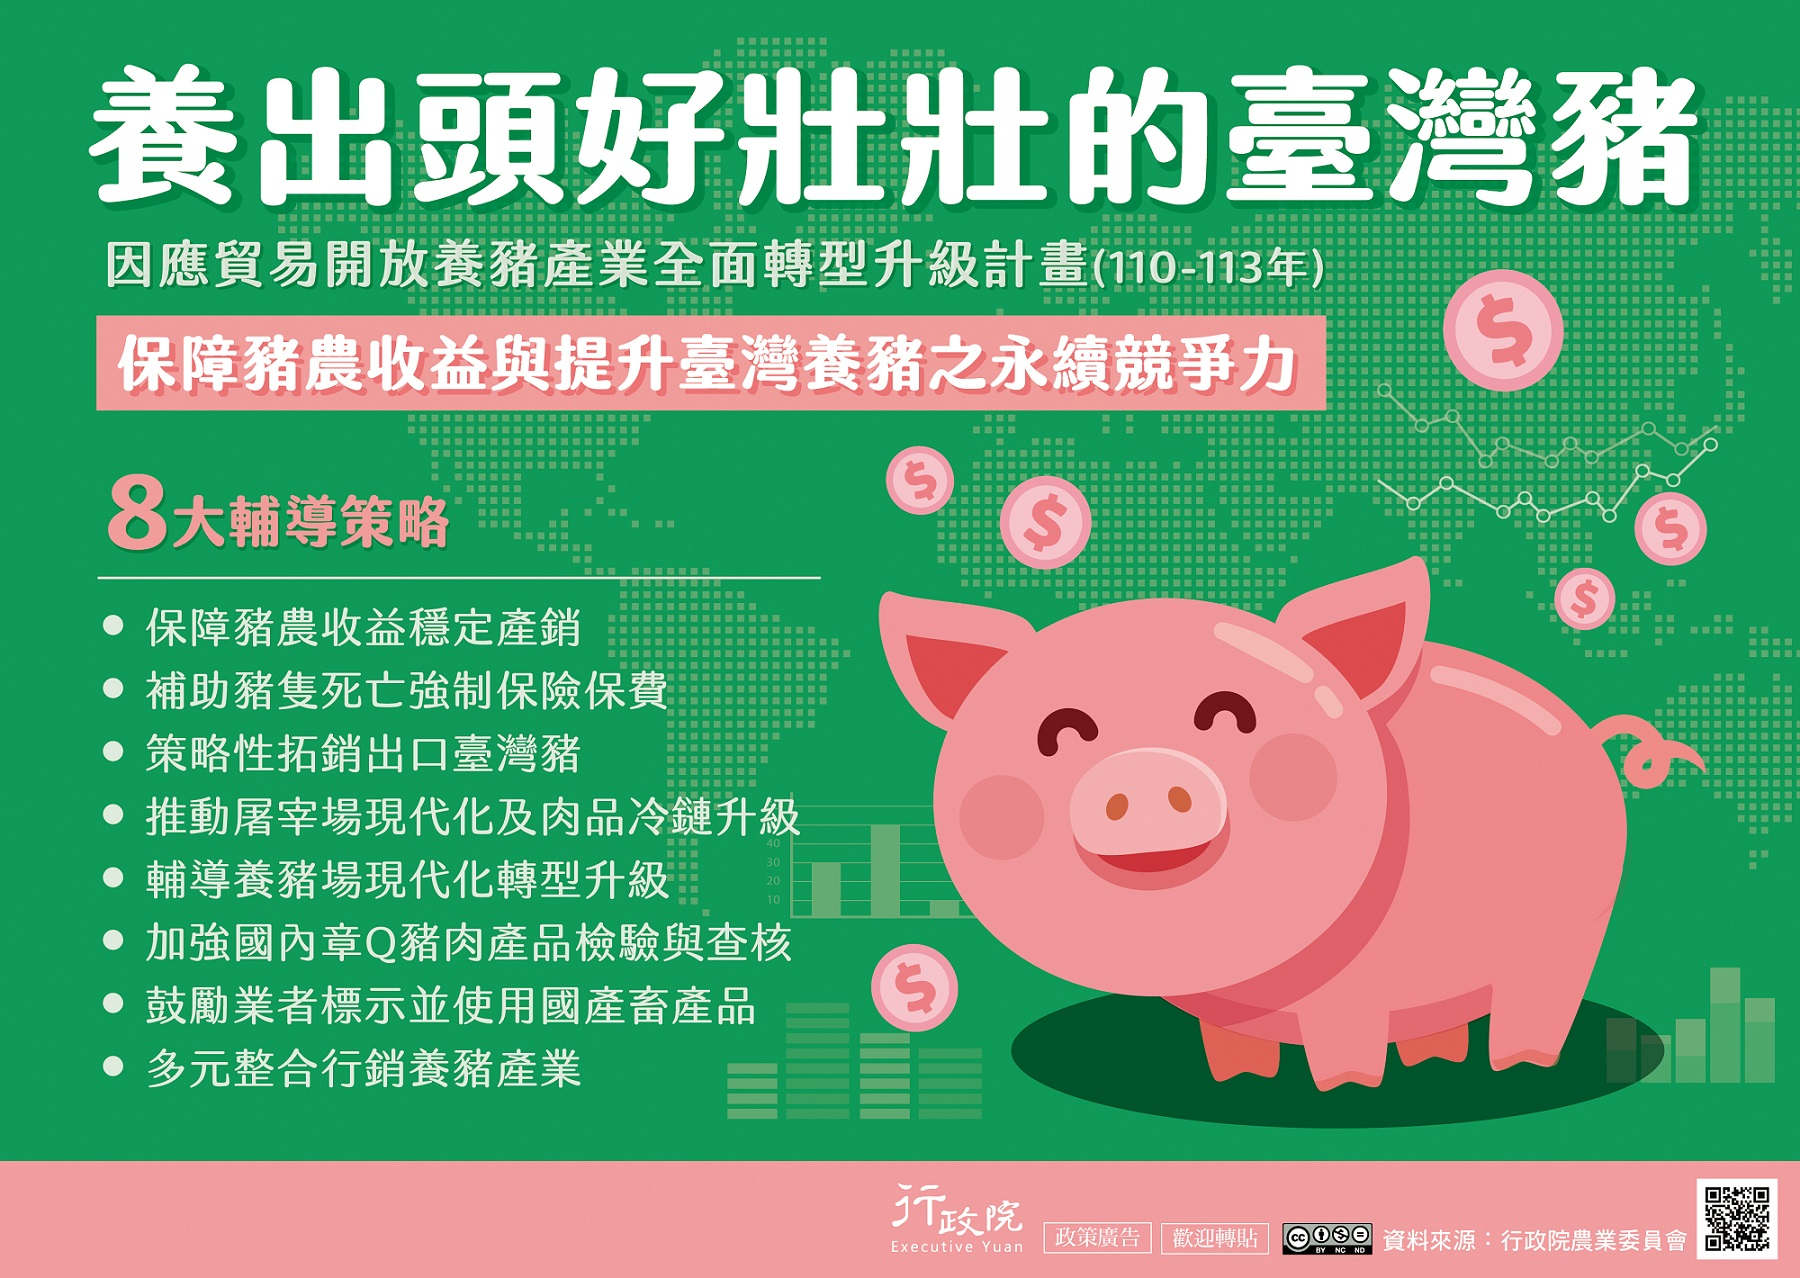 行政院新聞傳播處製作「養豬產業全面轉型升級」政策說明資料